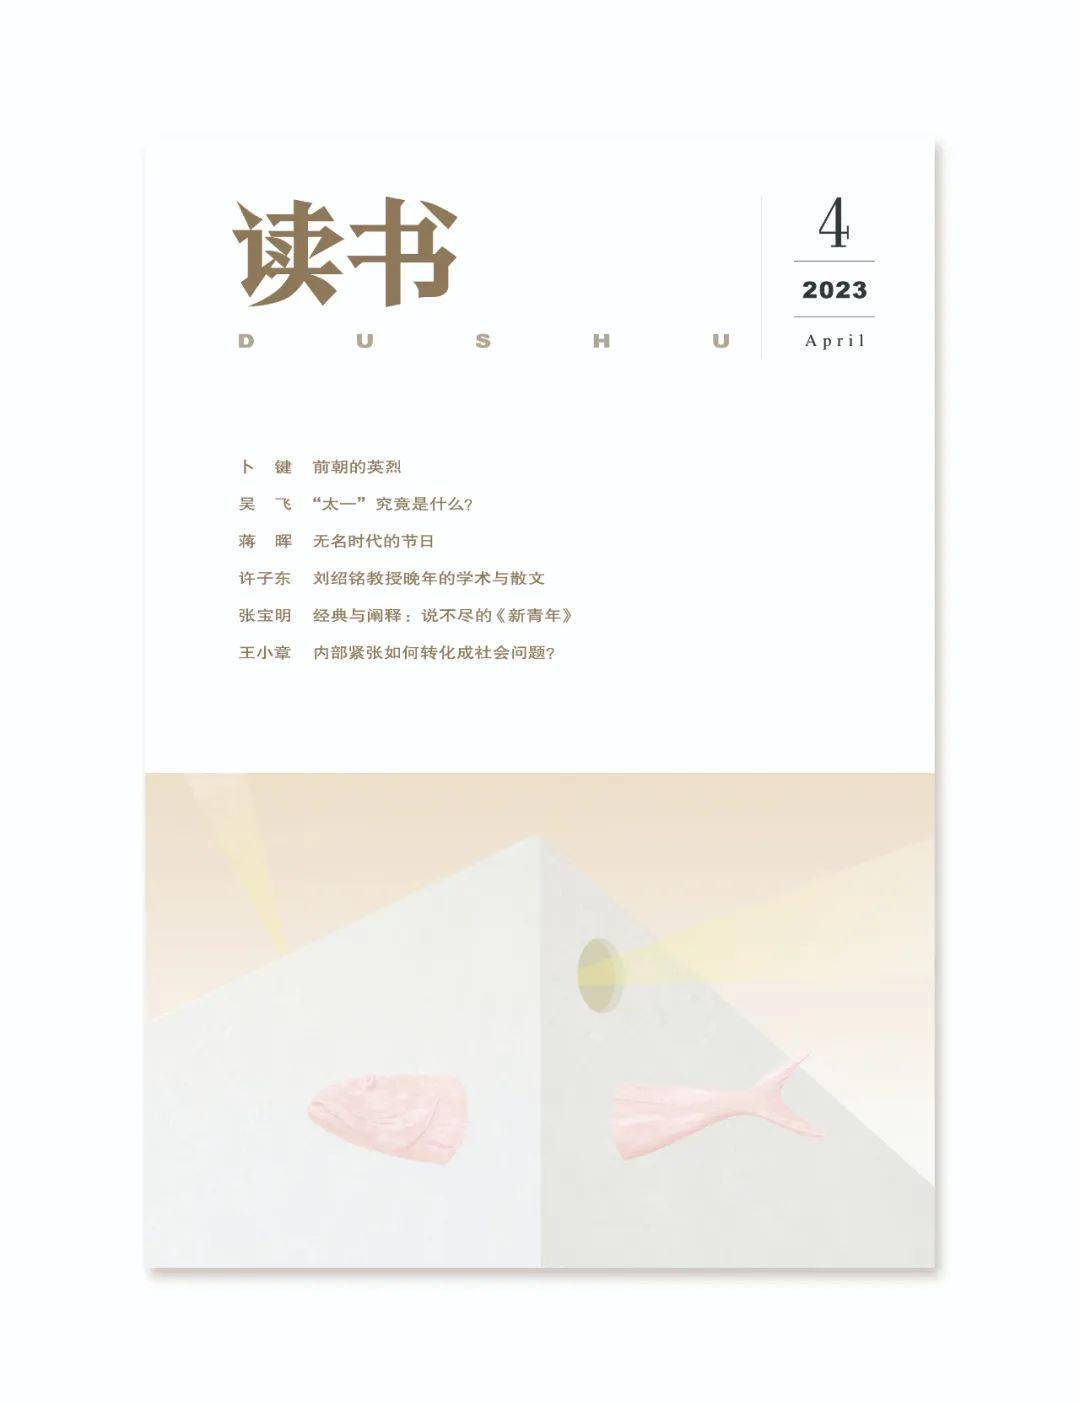 新刊速递：2023年第4期封面+目录_手机搜狐网